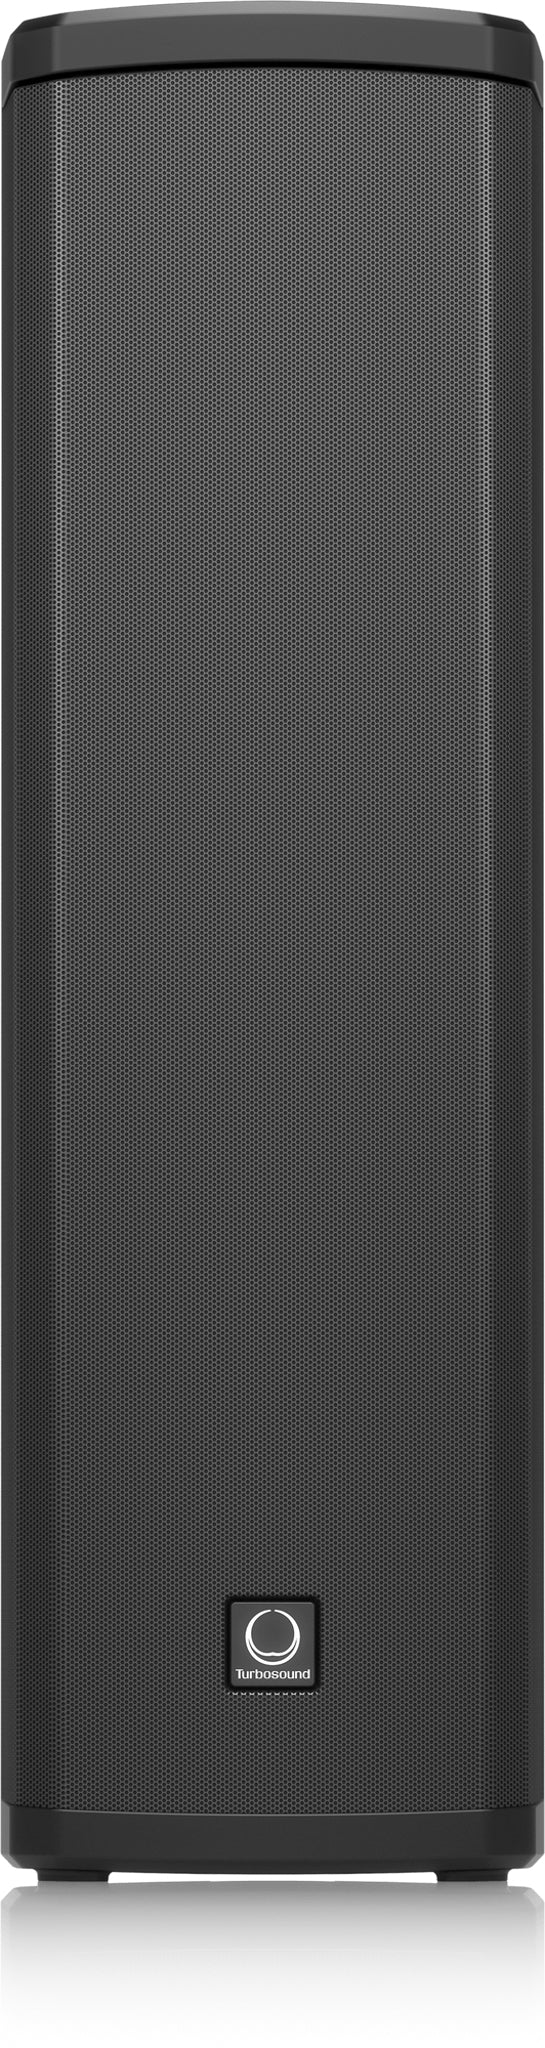 Turbosound iP300 600W Active Column Speaker (Each)